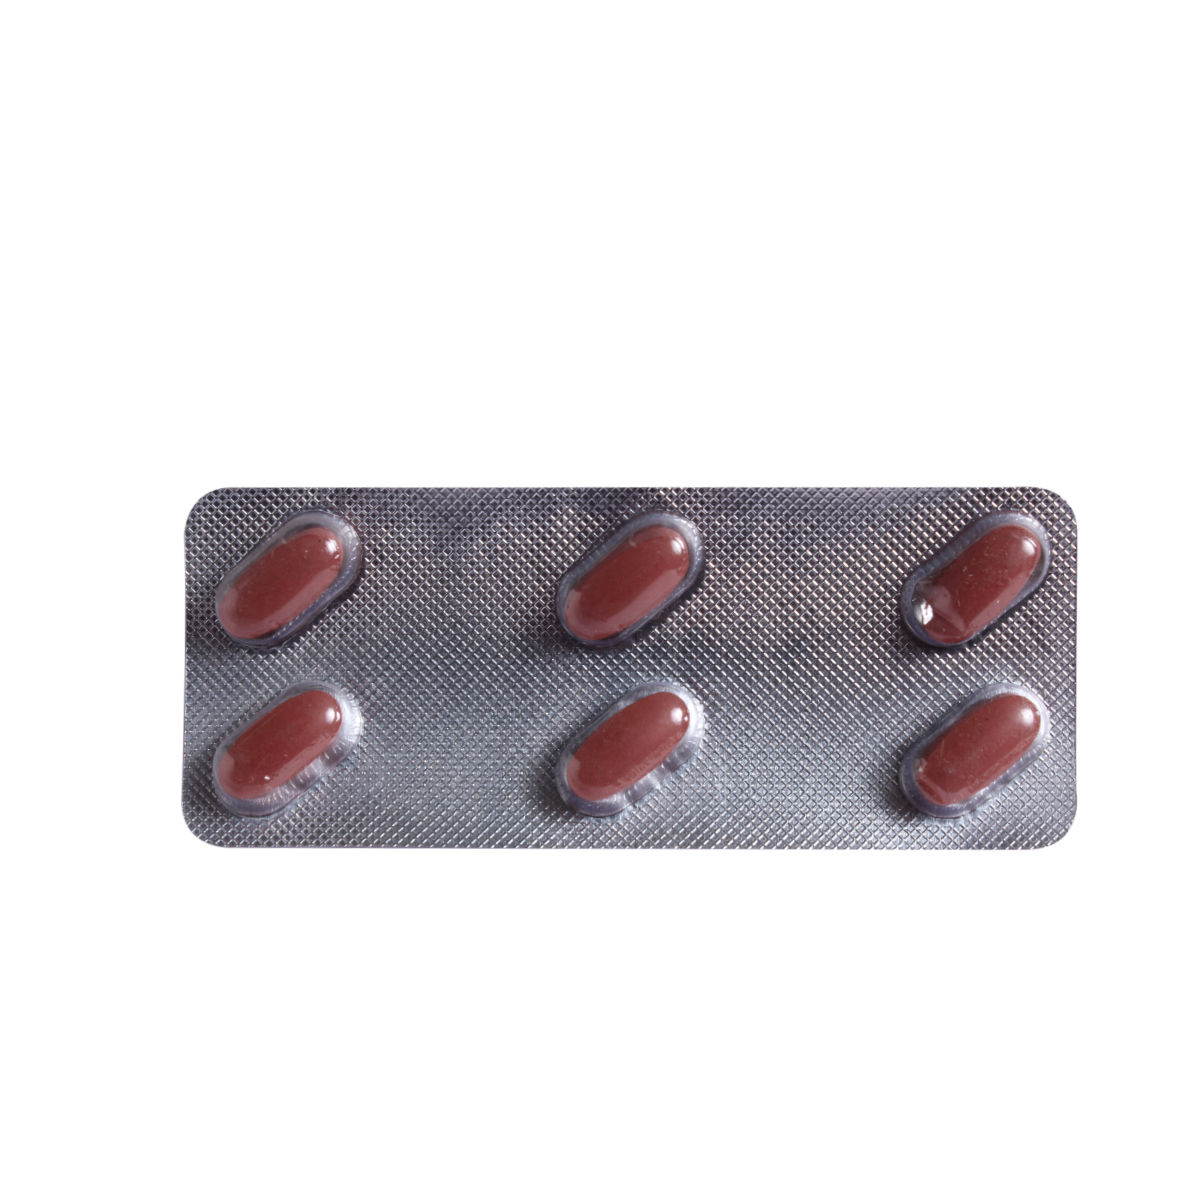 Buy Fexofen 180 mg Tablet 6's Online